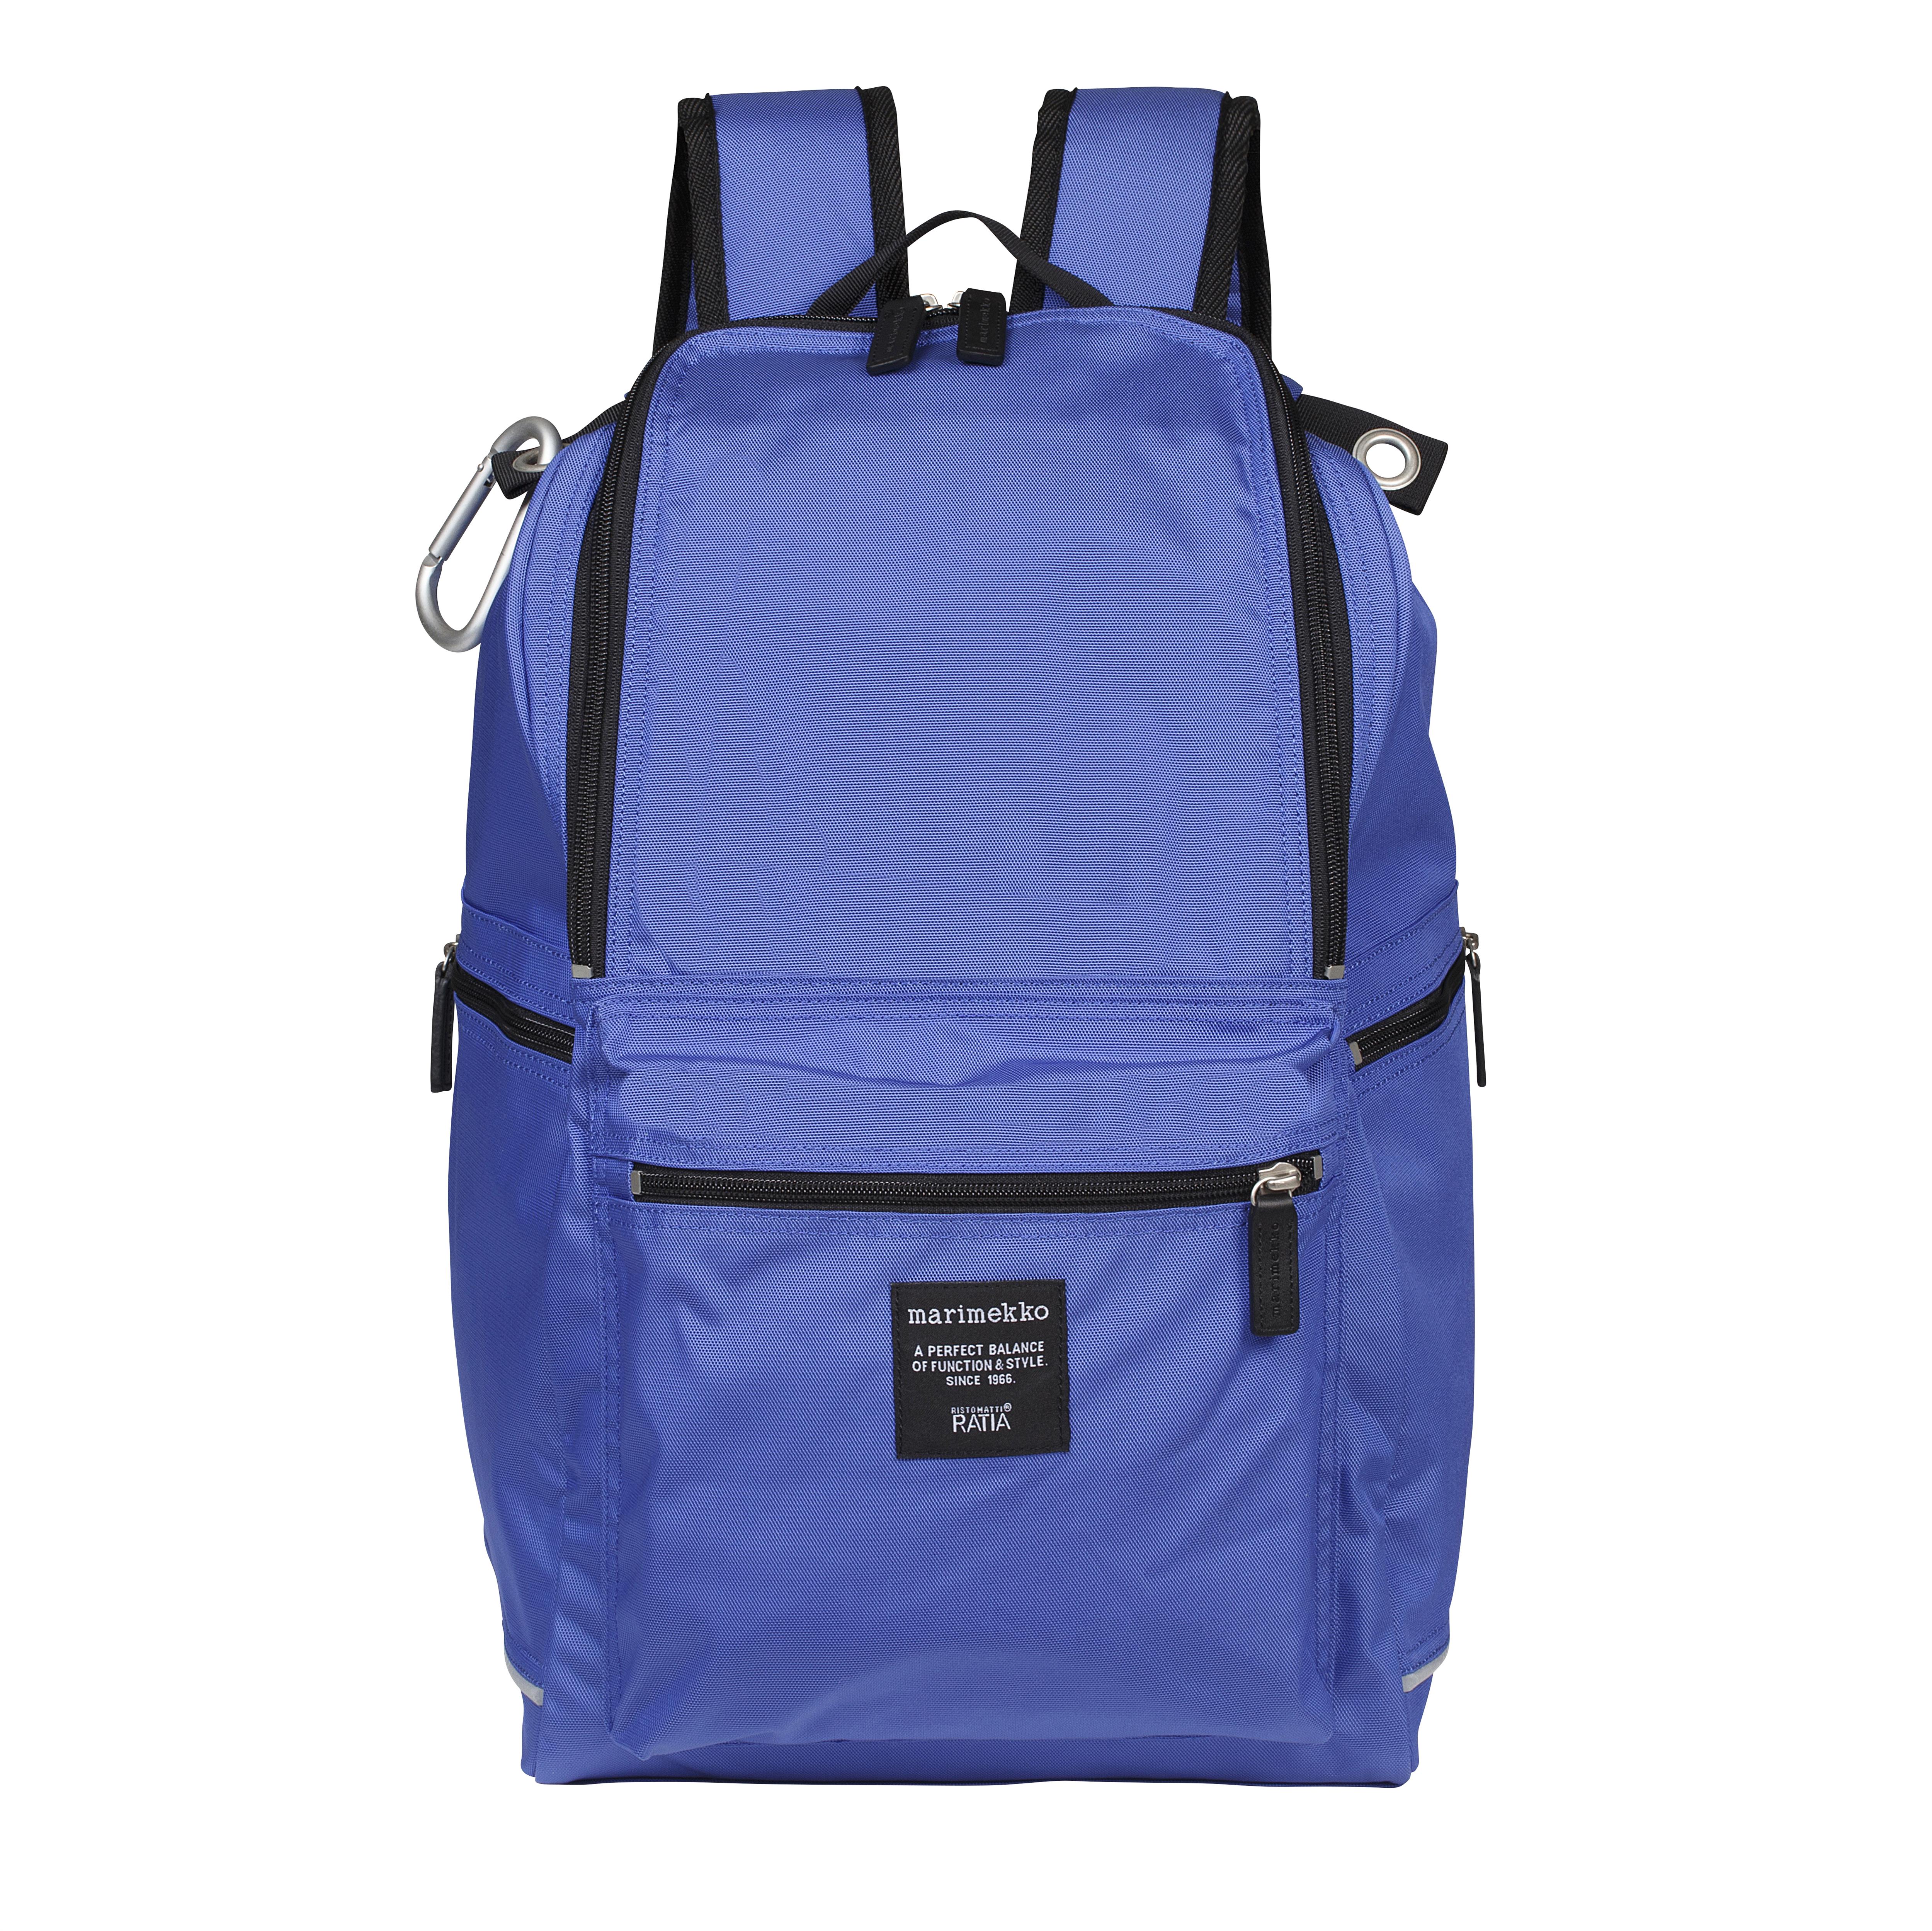 Buddy backpack, cobalt blue